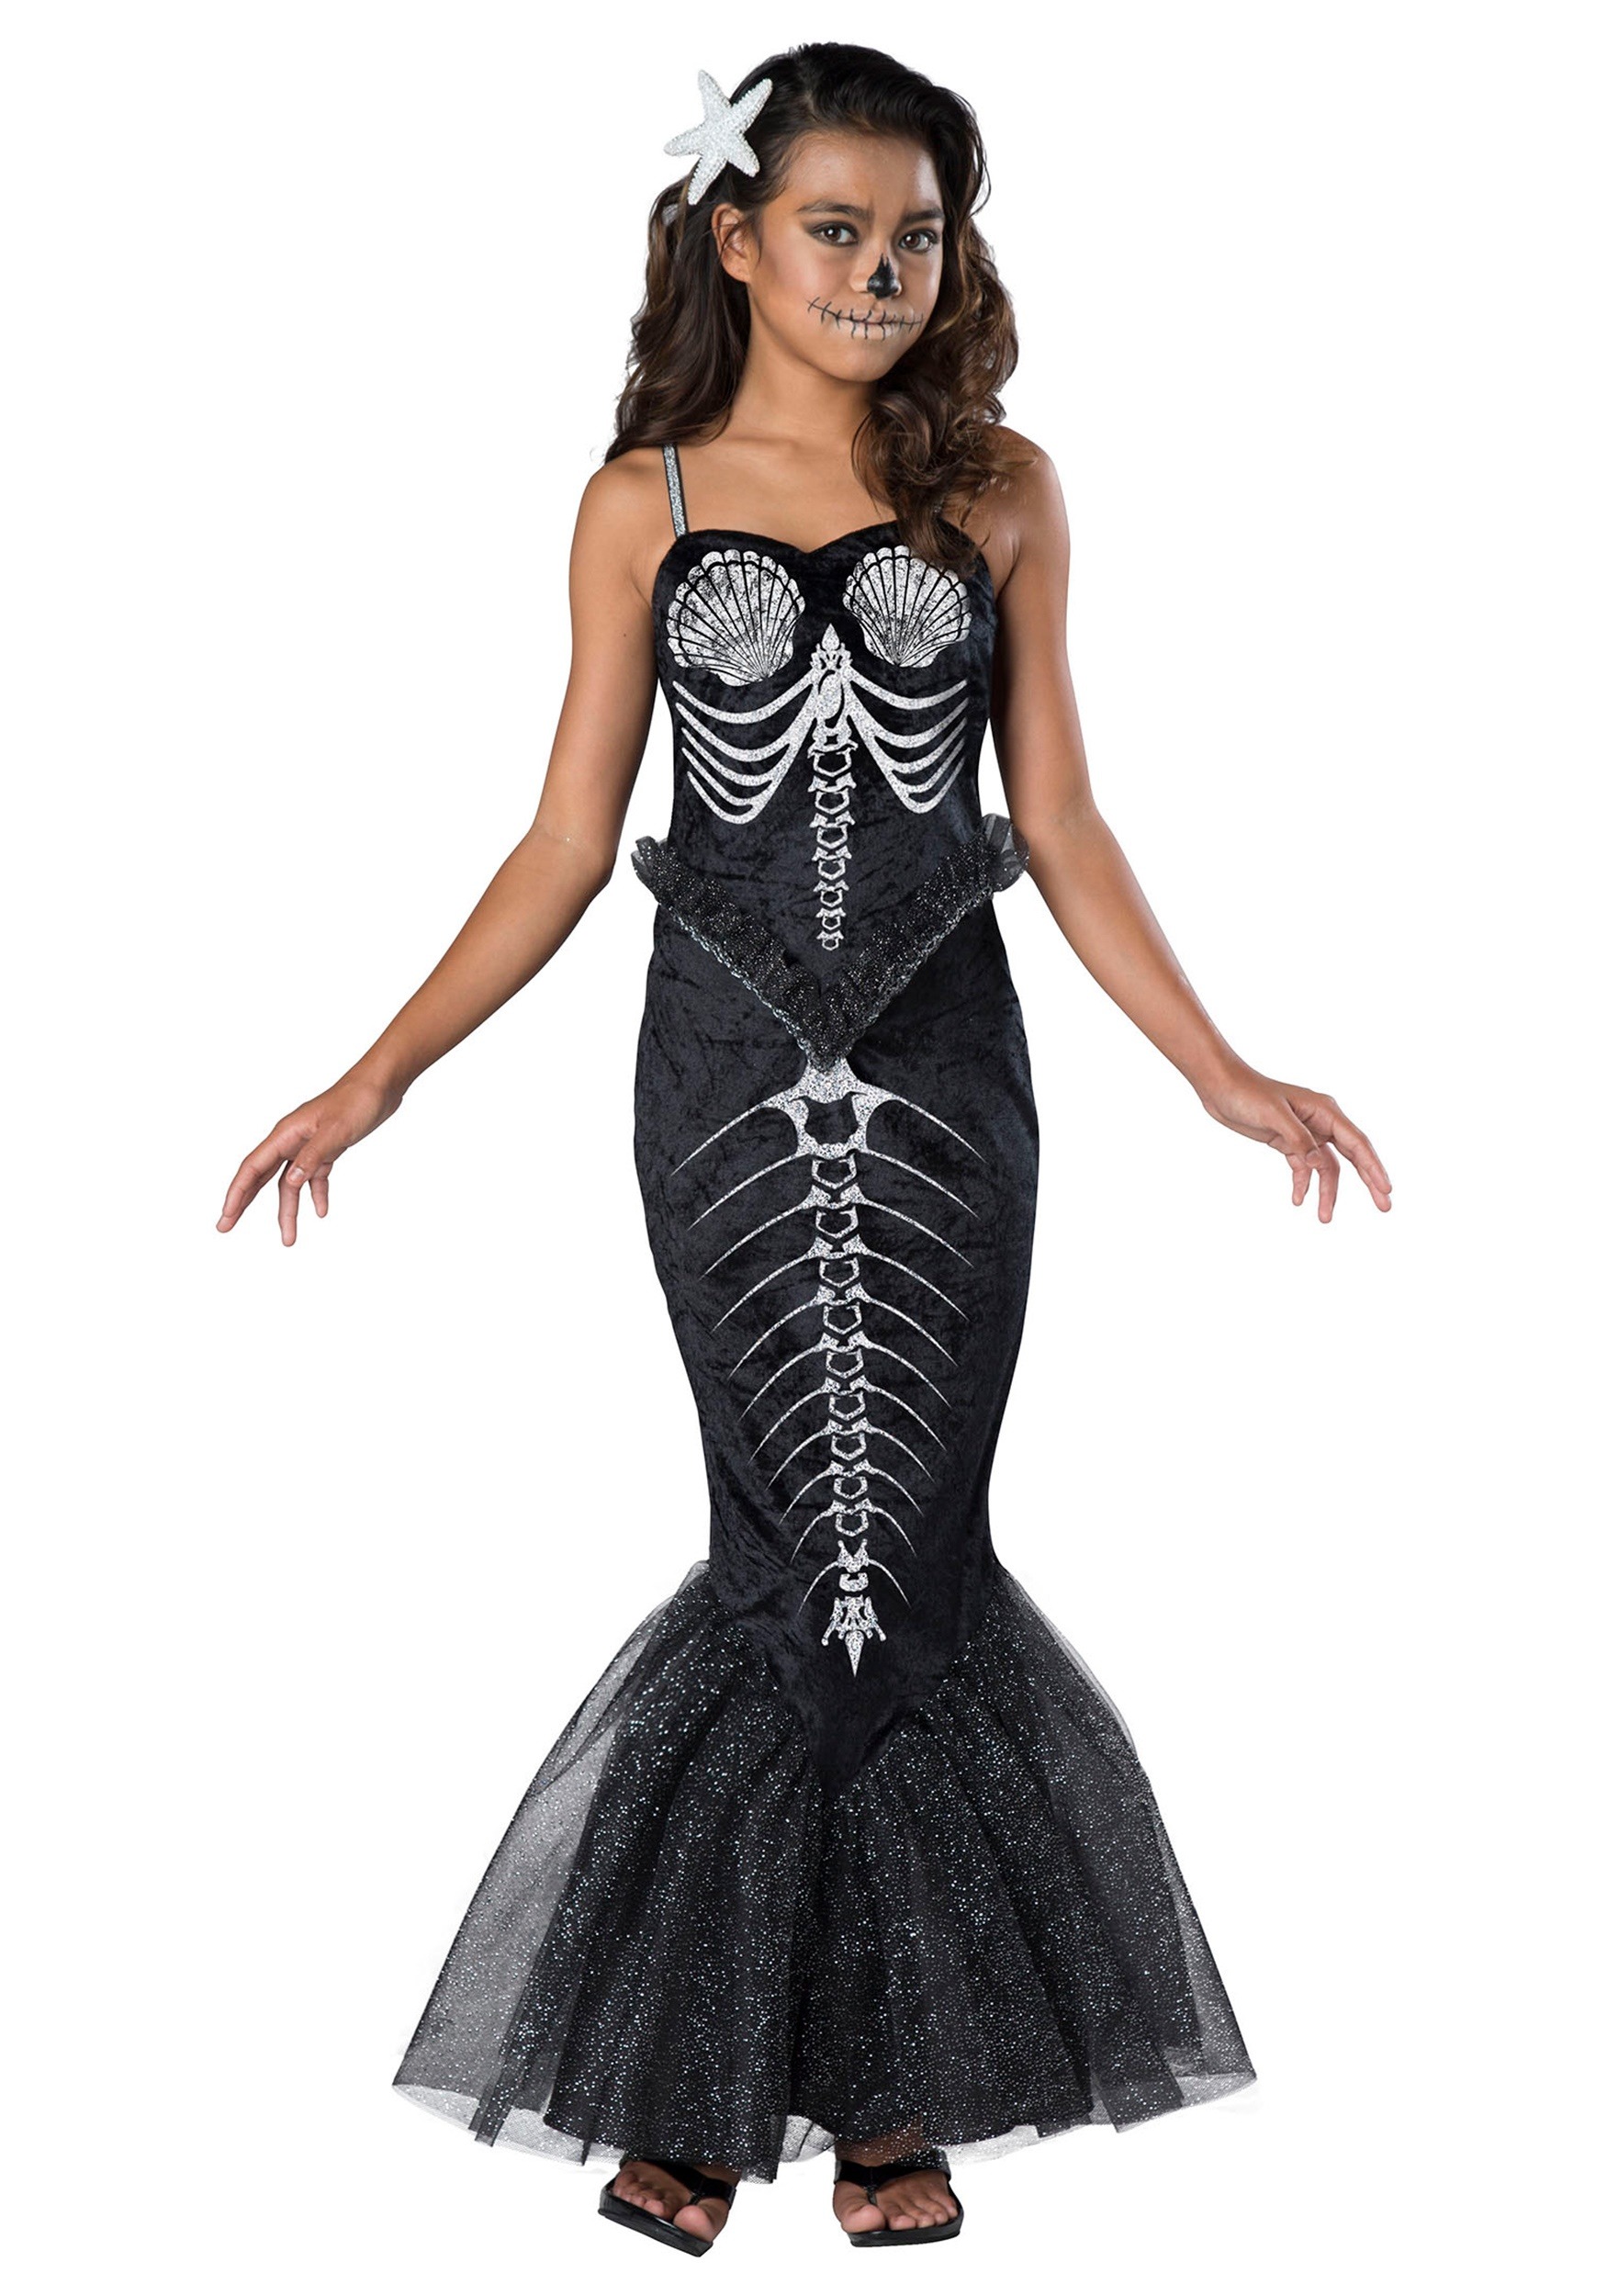 Disfraz de sirena misteriosa para niñas, disfraz de Halloween para fiesta,  talla L (12-14)